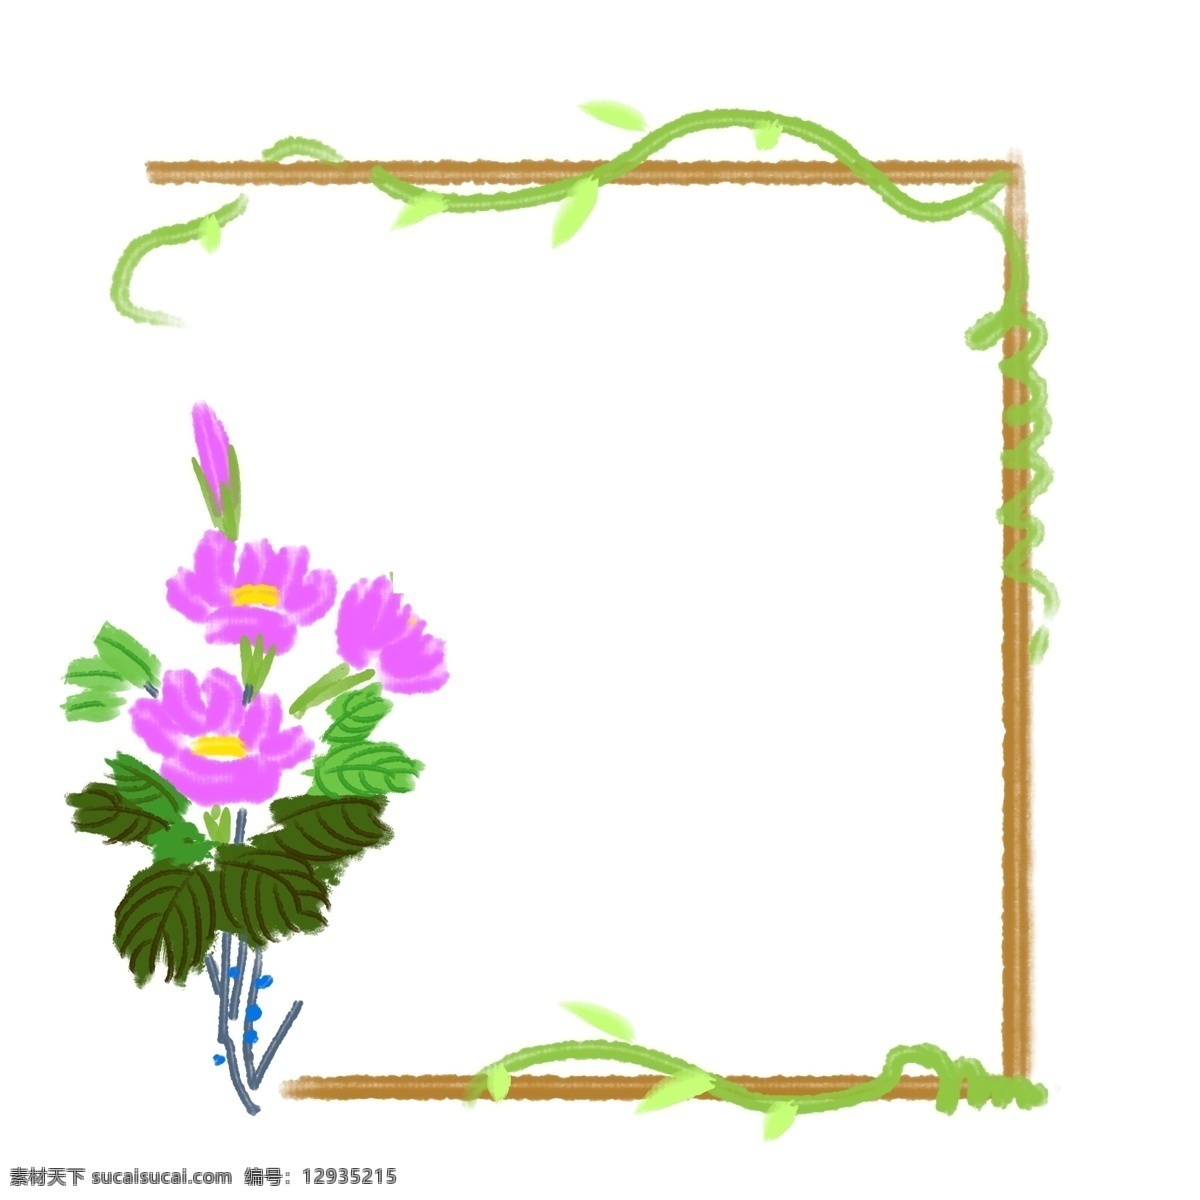 紫色 花朵 藤蔓 边框 紫色花朵 绿藤 多边形边框 正方形 花藤 花瓣 鲜花 框架 春天来了